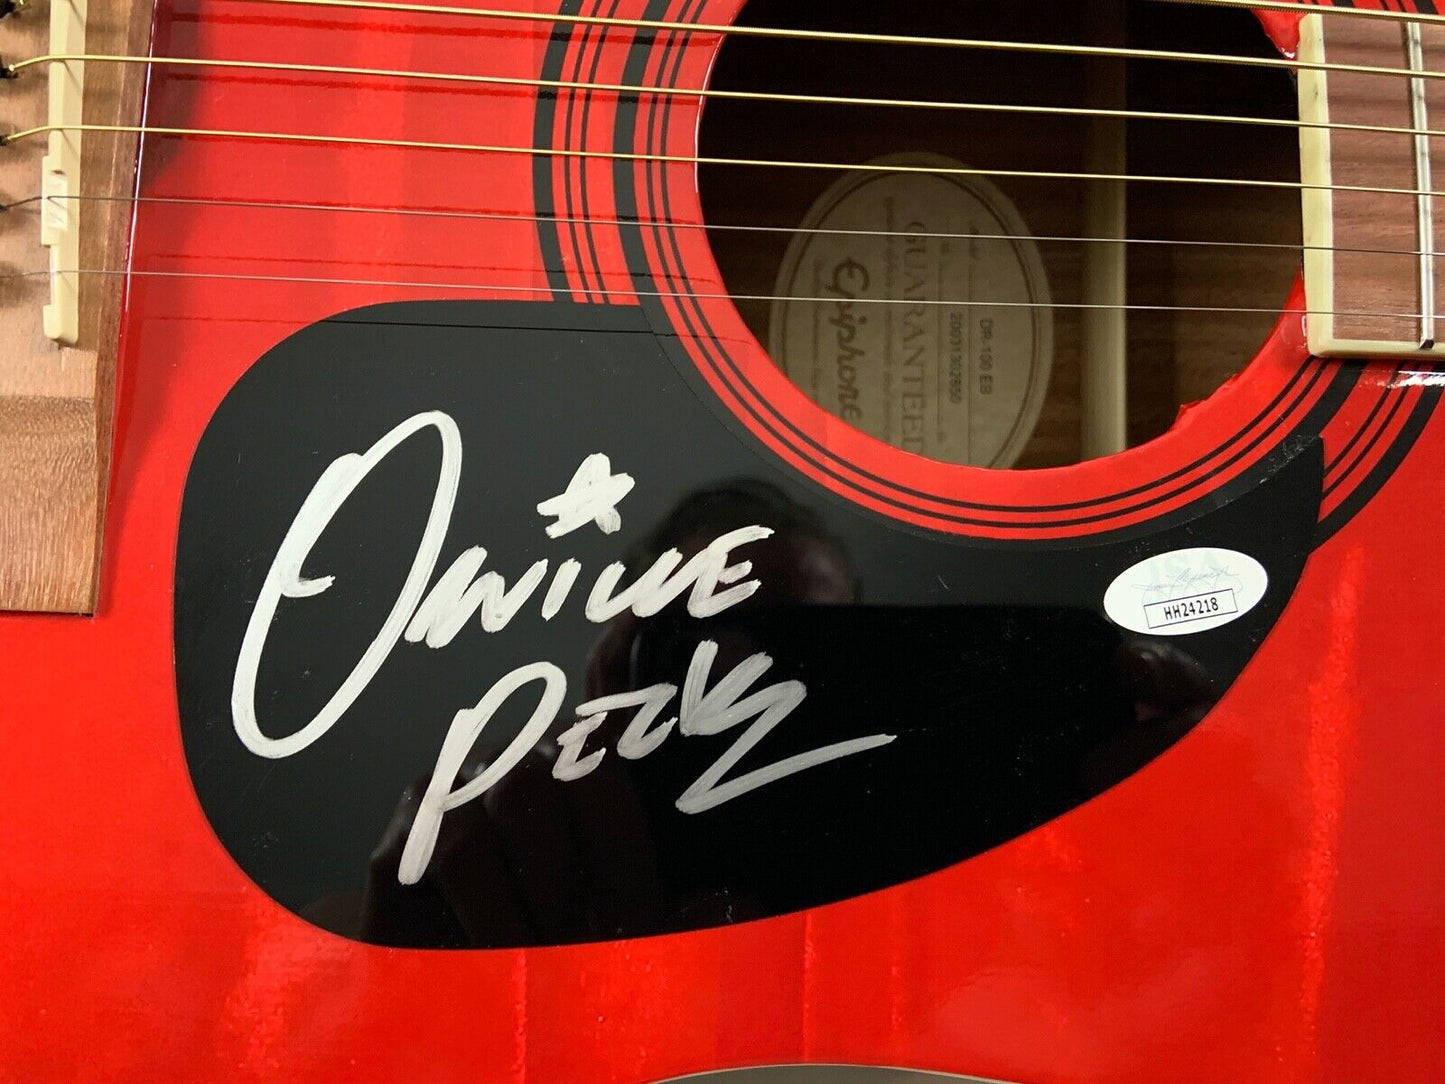 Orville Peck JSA Autograph Signed Guitar Epiphone Acoustic